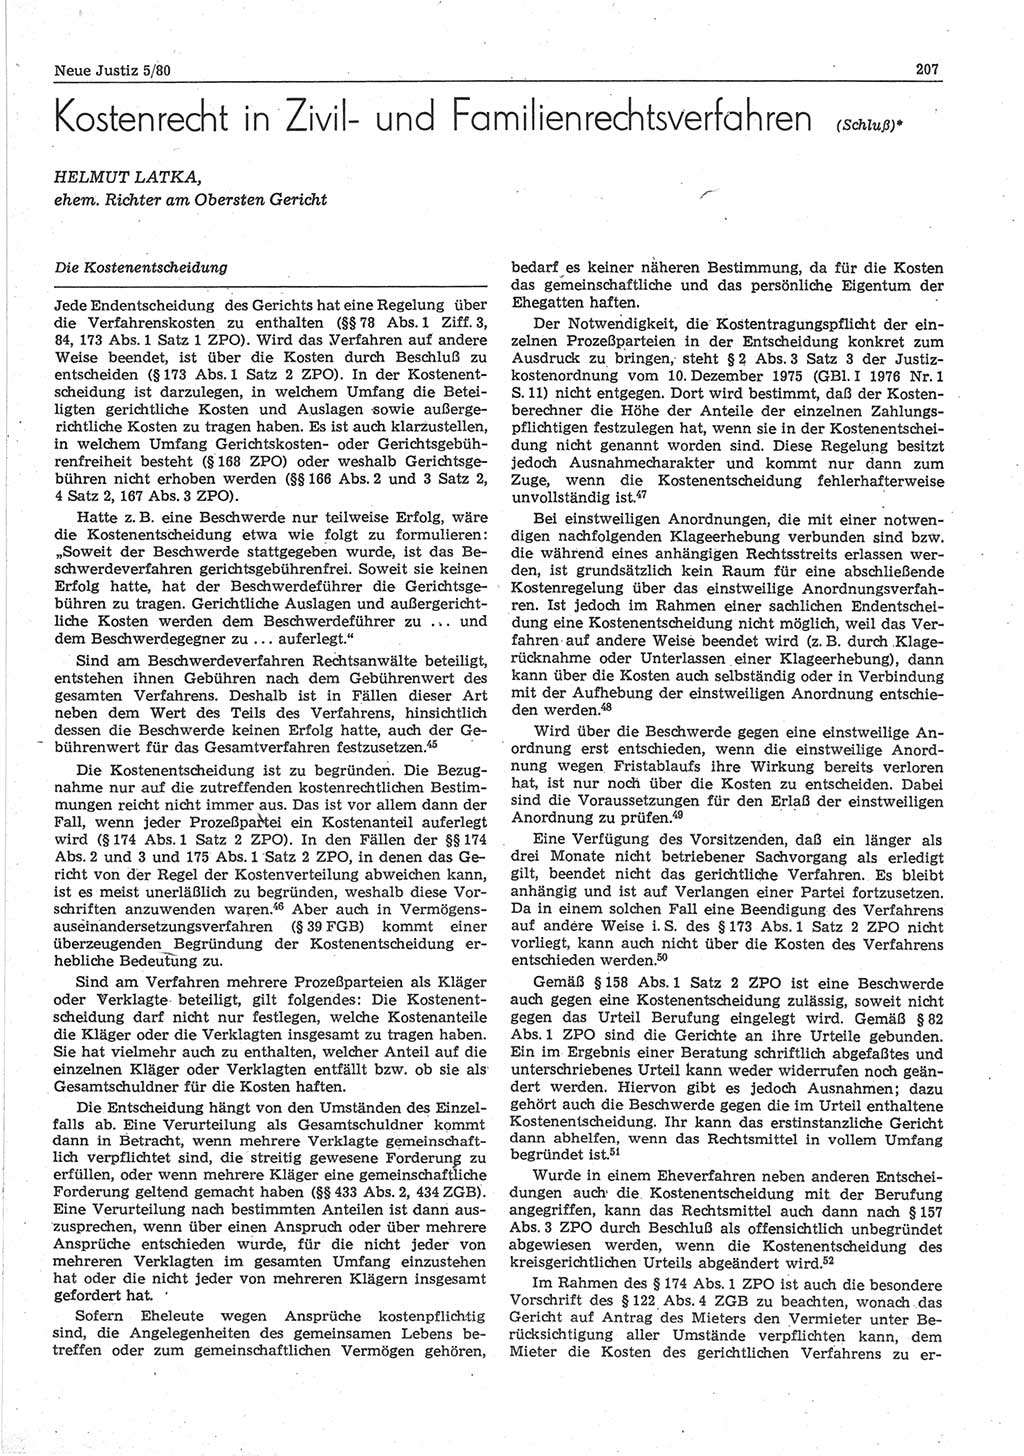 Neue Justiz (NJ), Zeitschrift für sozialistisches Recht und Gesetzlichkeit [Deutsche Demokratische Republik (DDR)], 34. Jahrgang 1980, Seite 207 (NJ DDR 1980, S. 207)